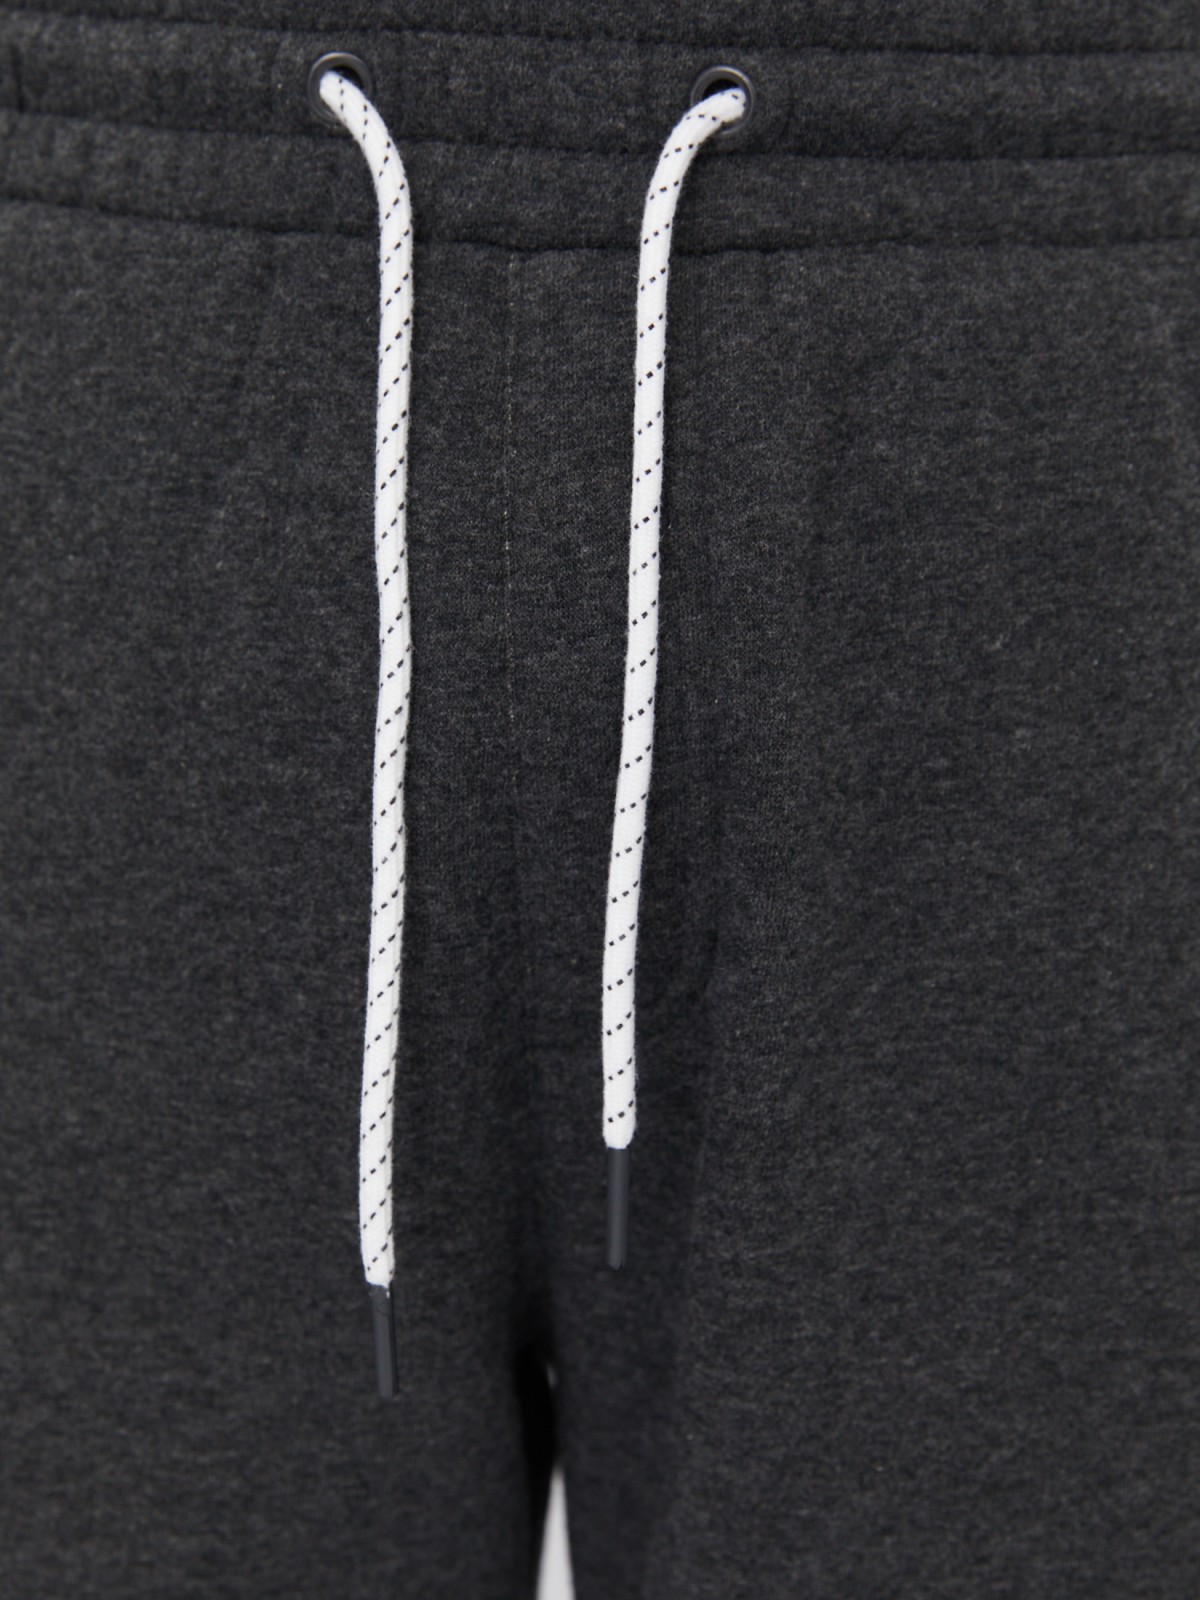 Утеплённые трикотажные брюки-джоггеры в спортивном стиле с лампасами zolla 213337660013, цвет темно-серый, размер M - фото 4